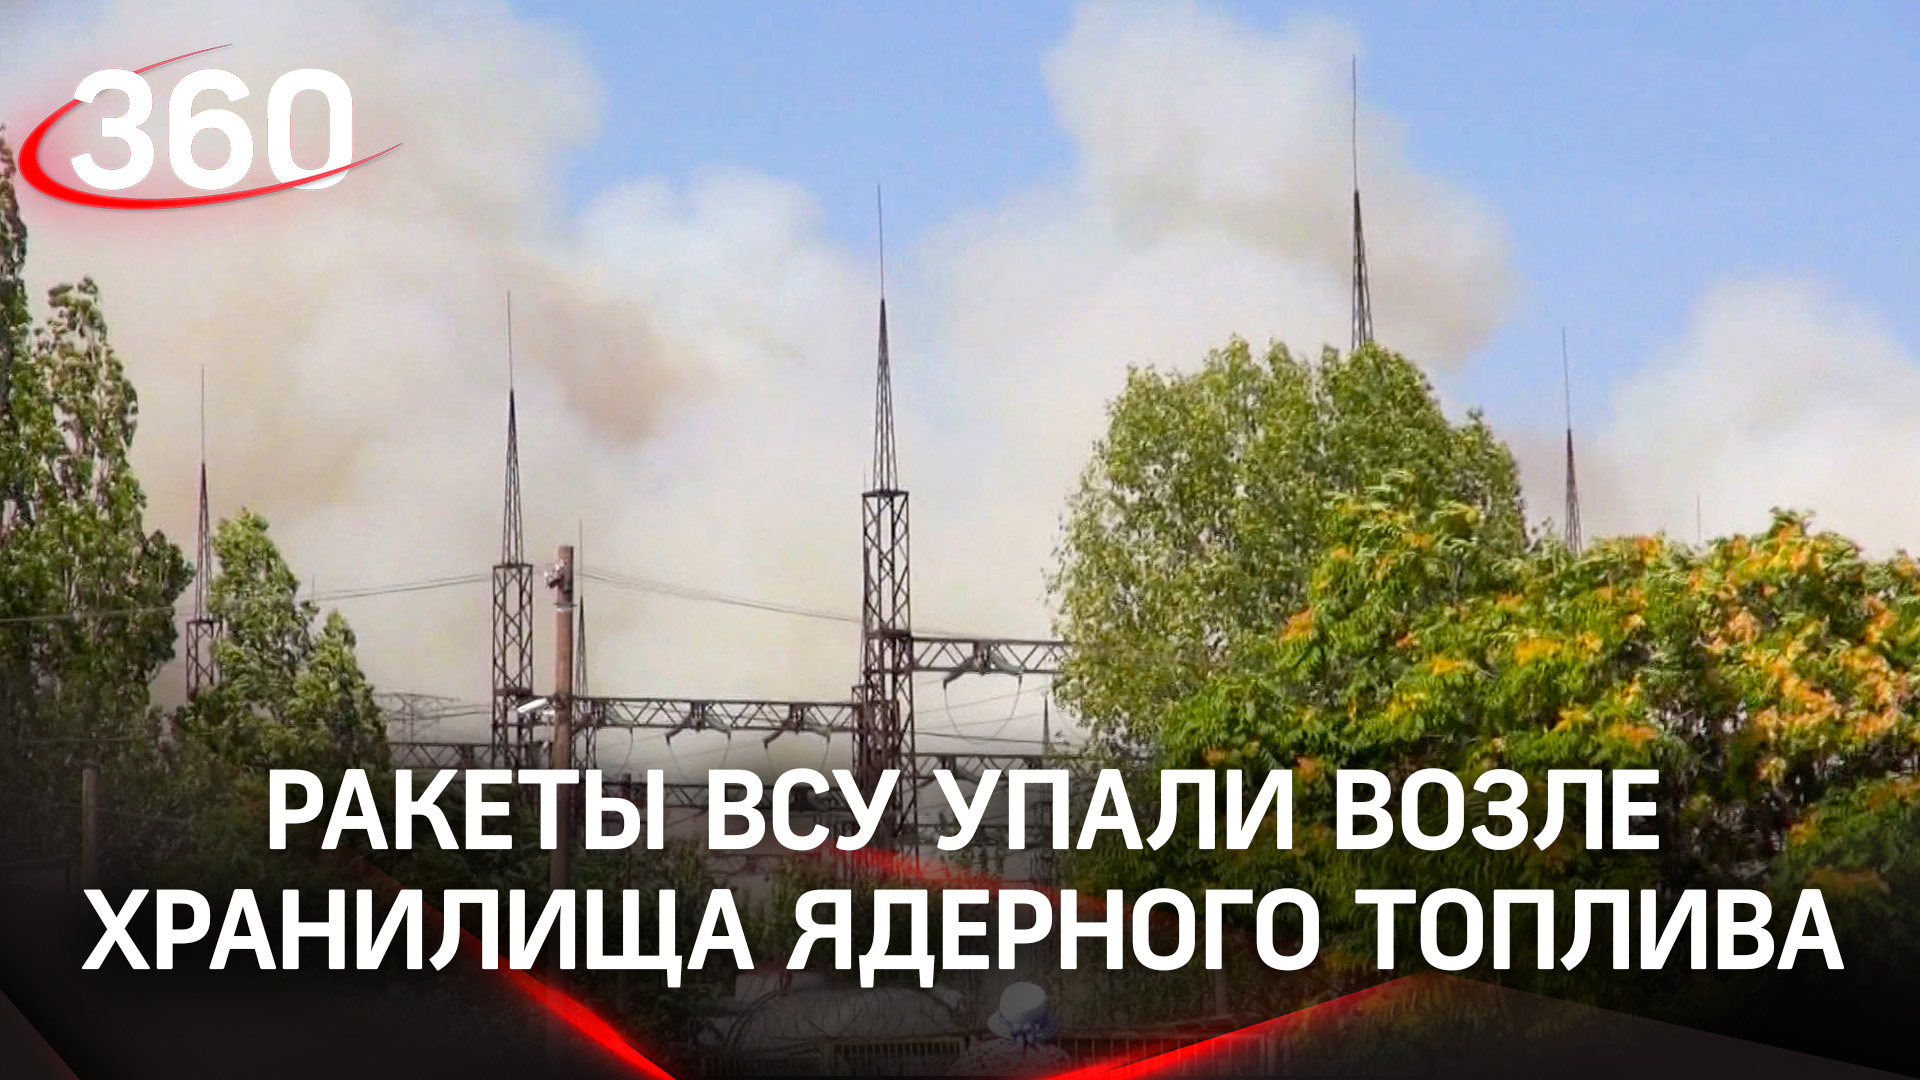 Минобороны: ракеты ВСУ упали возле хранилища ядерного топлива на Запорожской АЭС